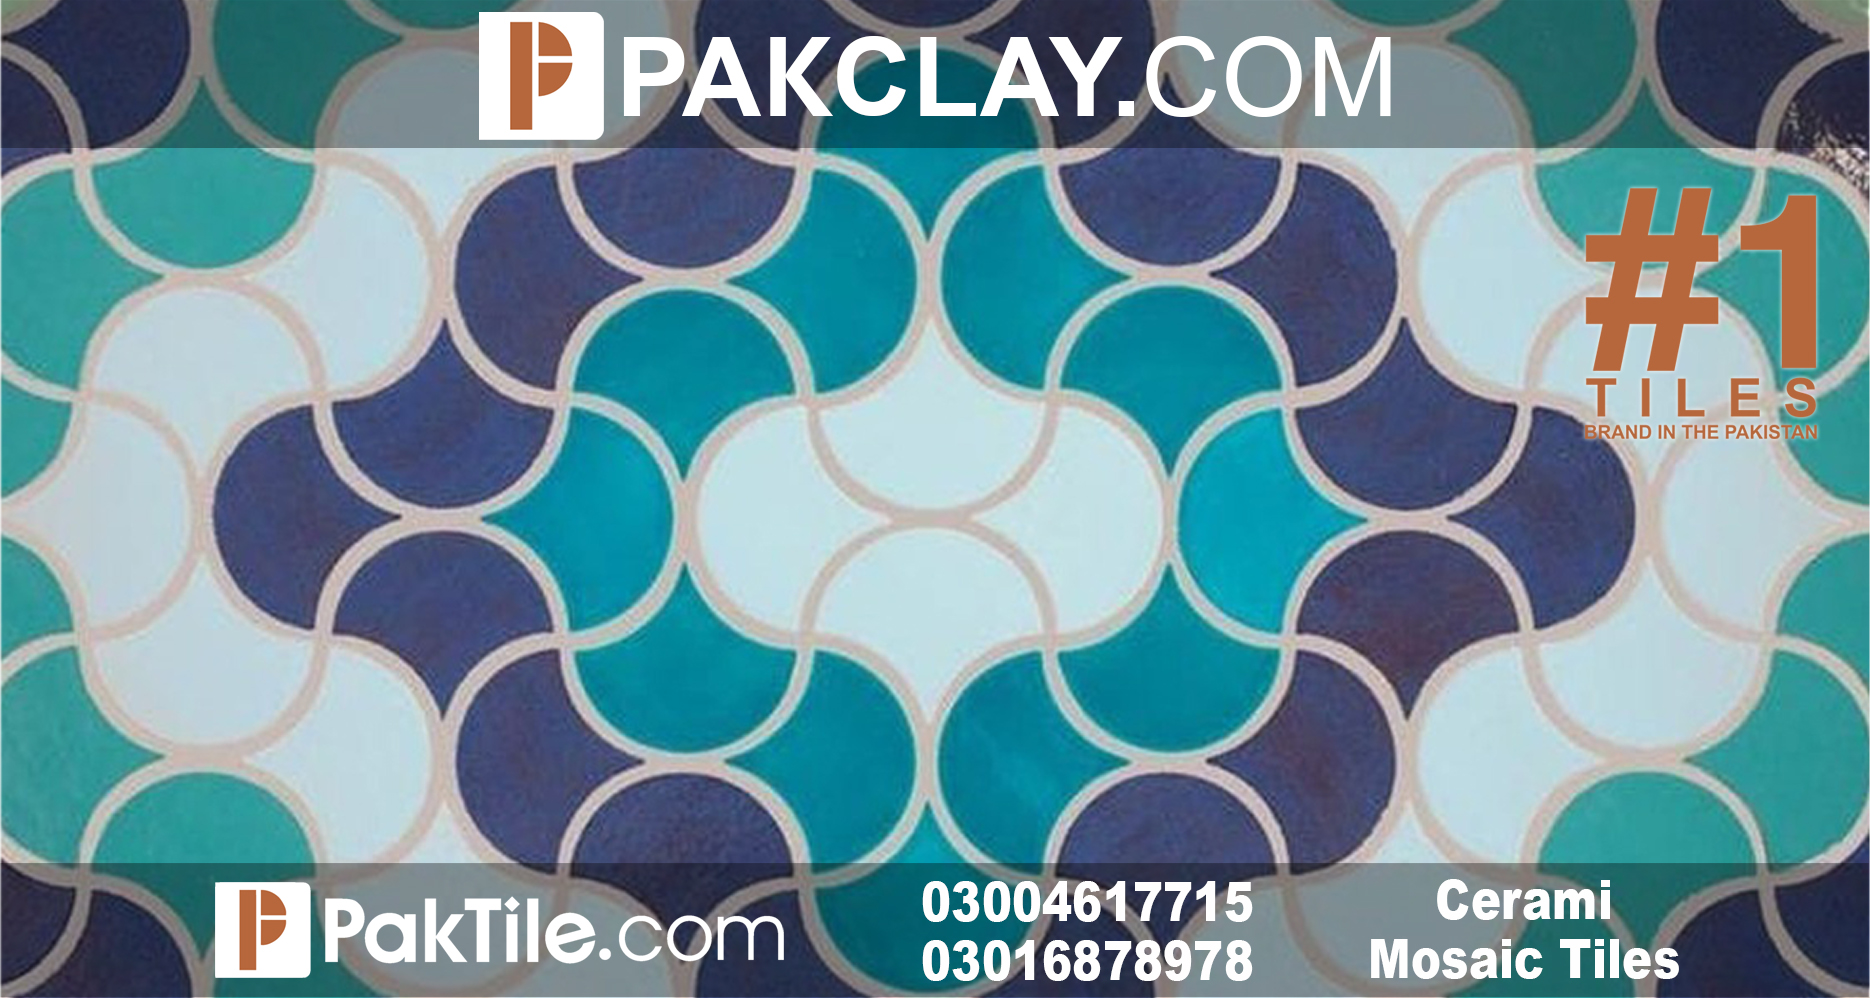 Ceramic Tiles Shop in Lahore